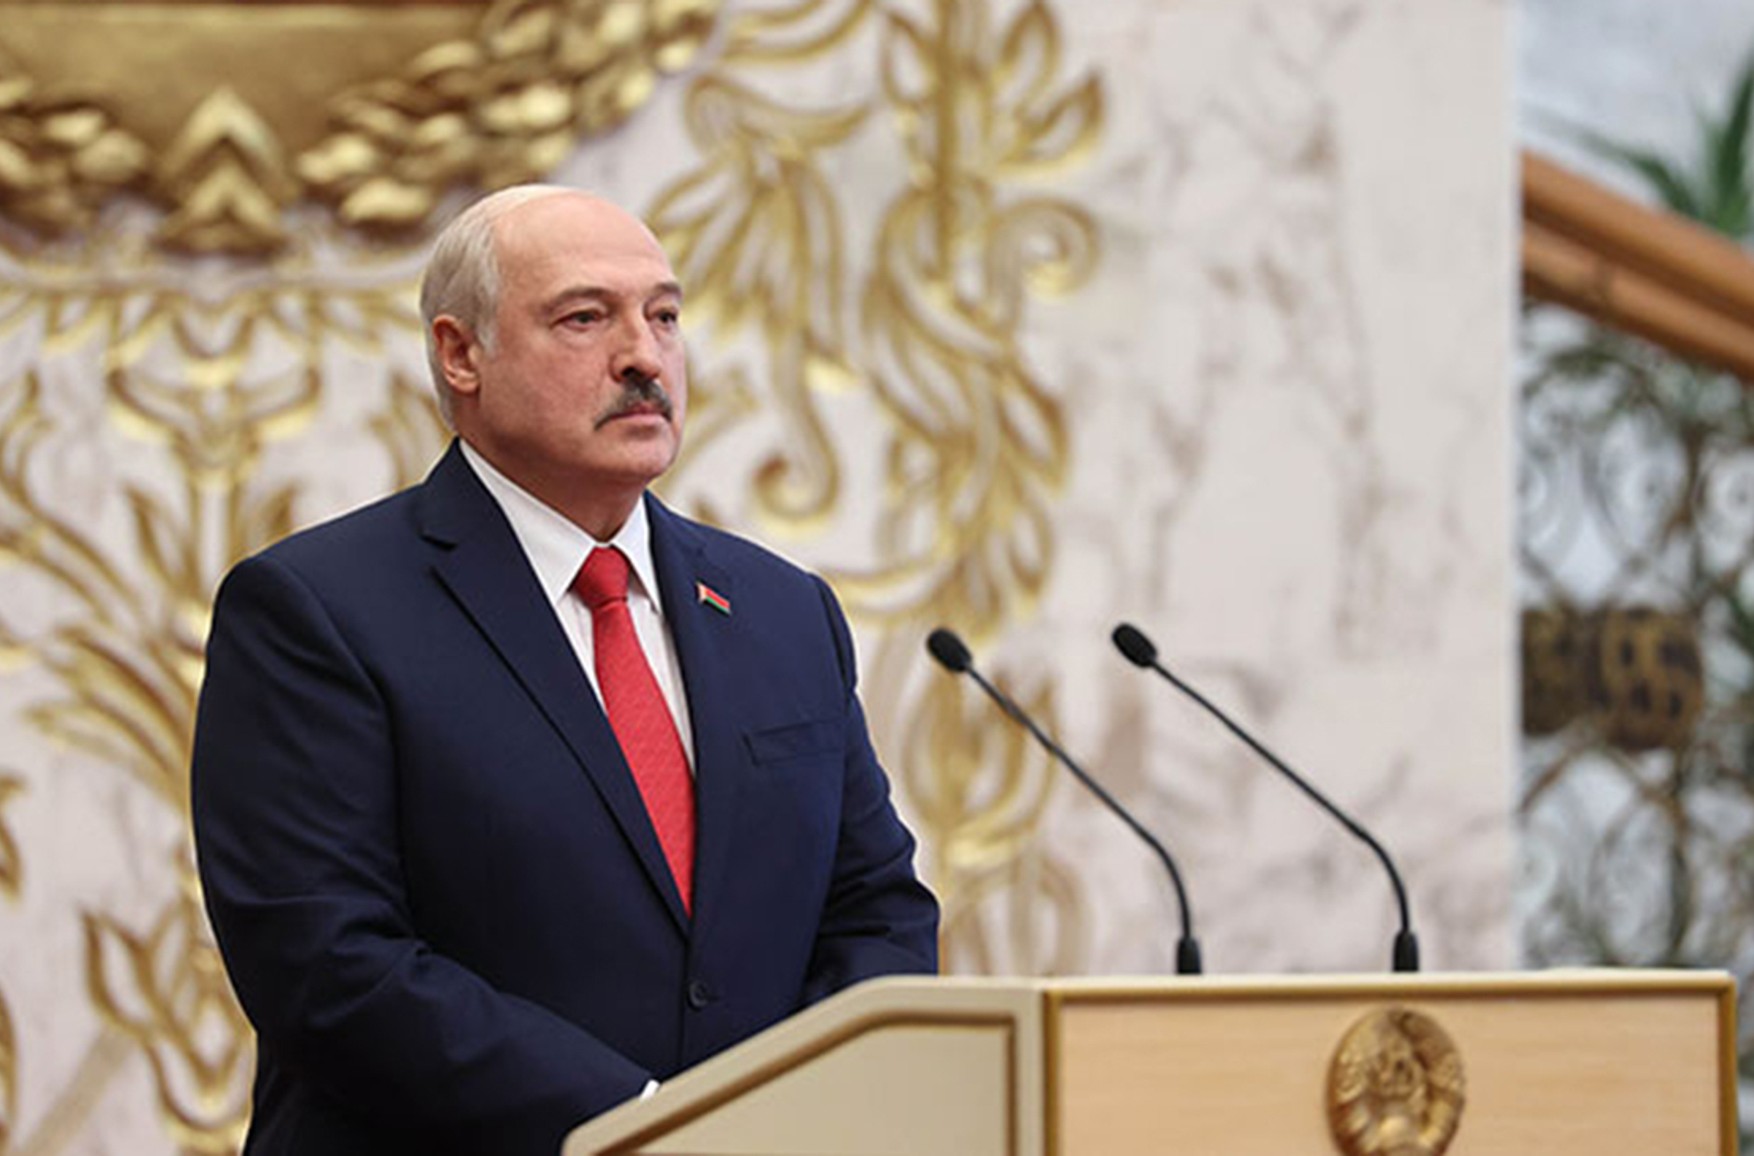 ЄС ввів санкції відносно офіційних осіб Білорусі, проте Лукашенко в список не потрапив